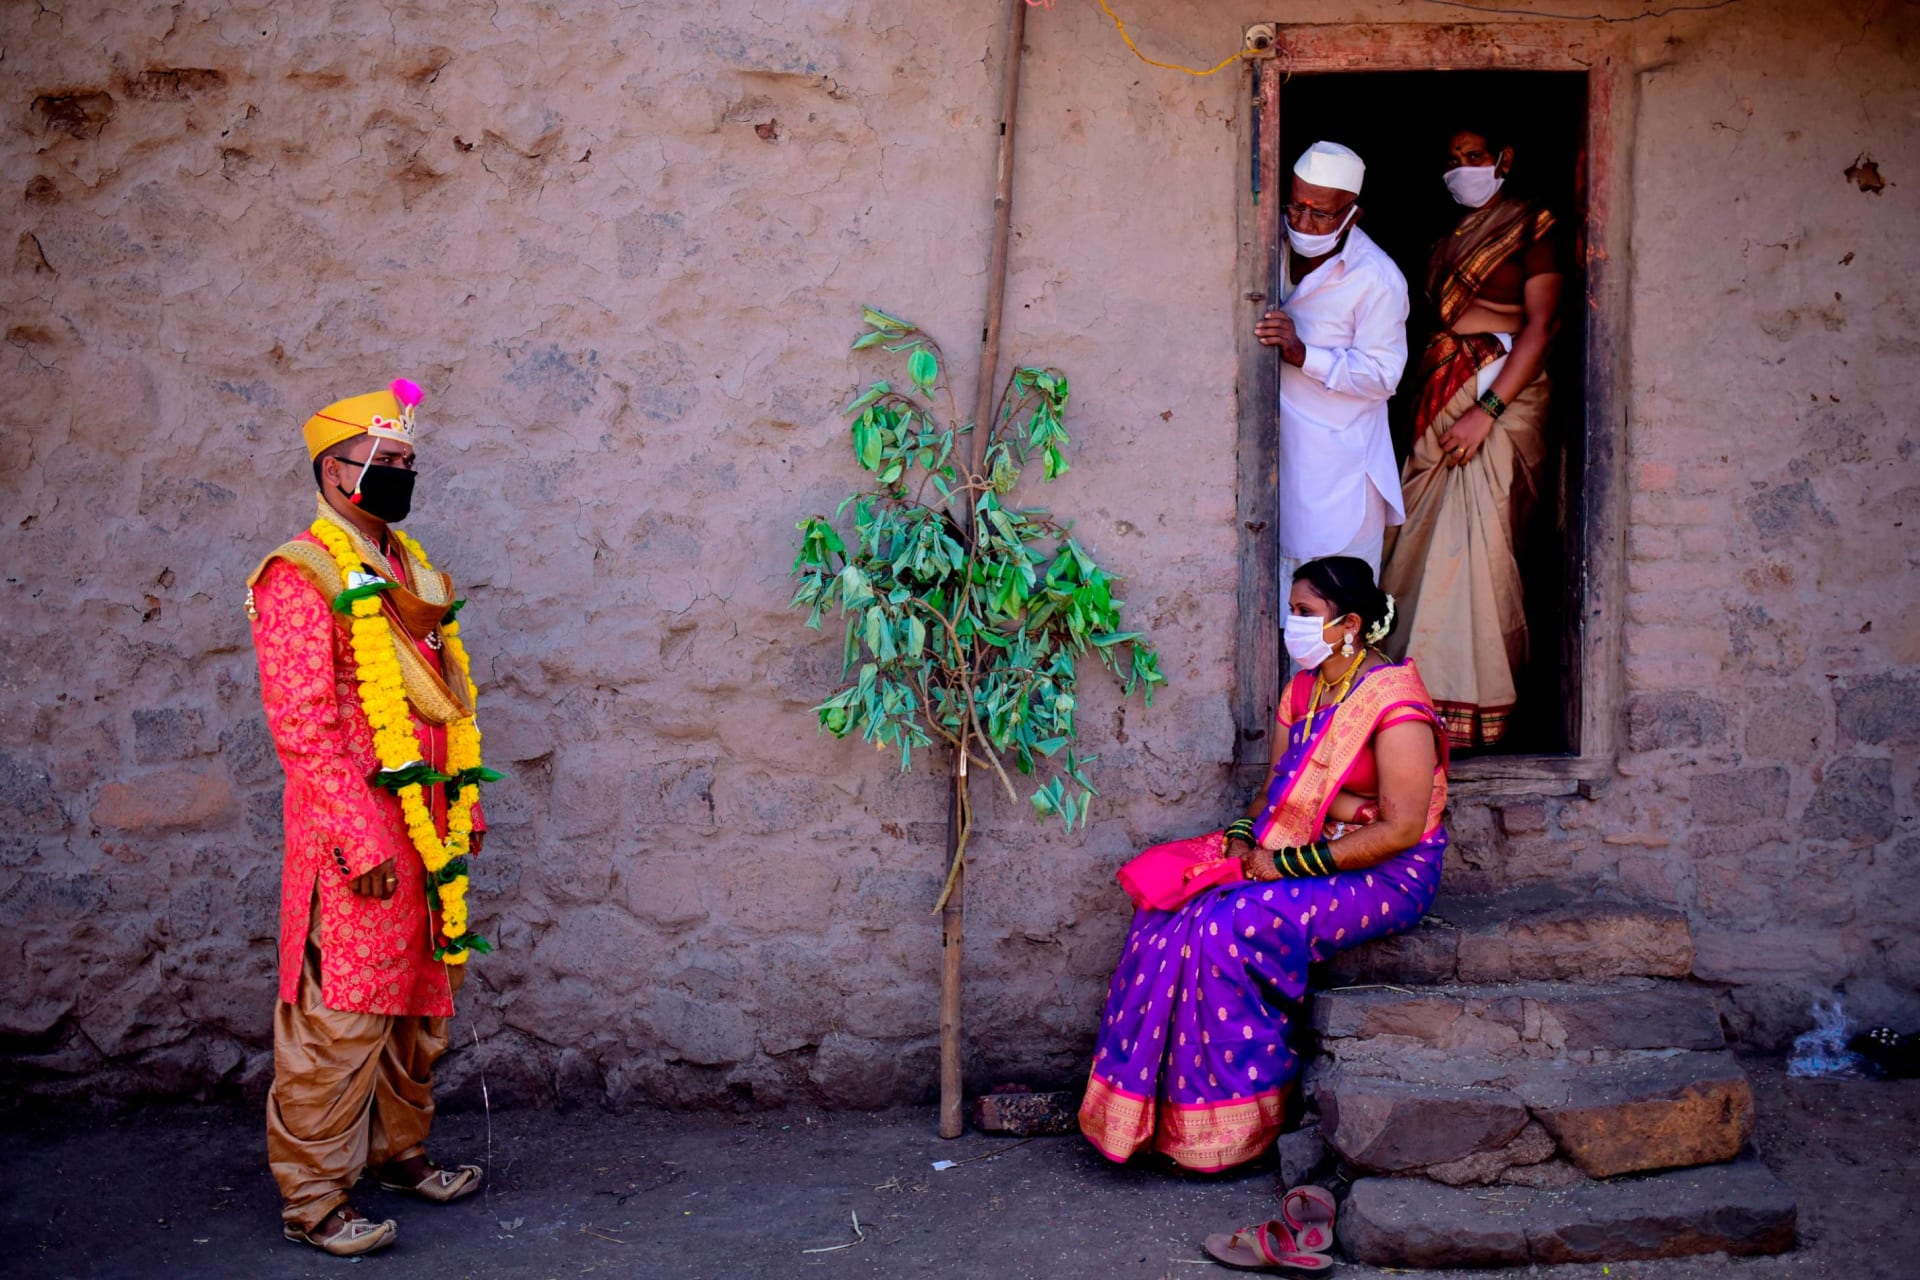 حفلات الزفاف الهندية في زمن الكورونا.. كيف تغيرت؟